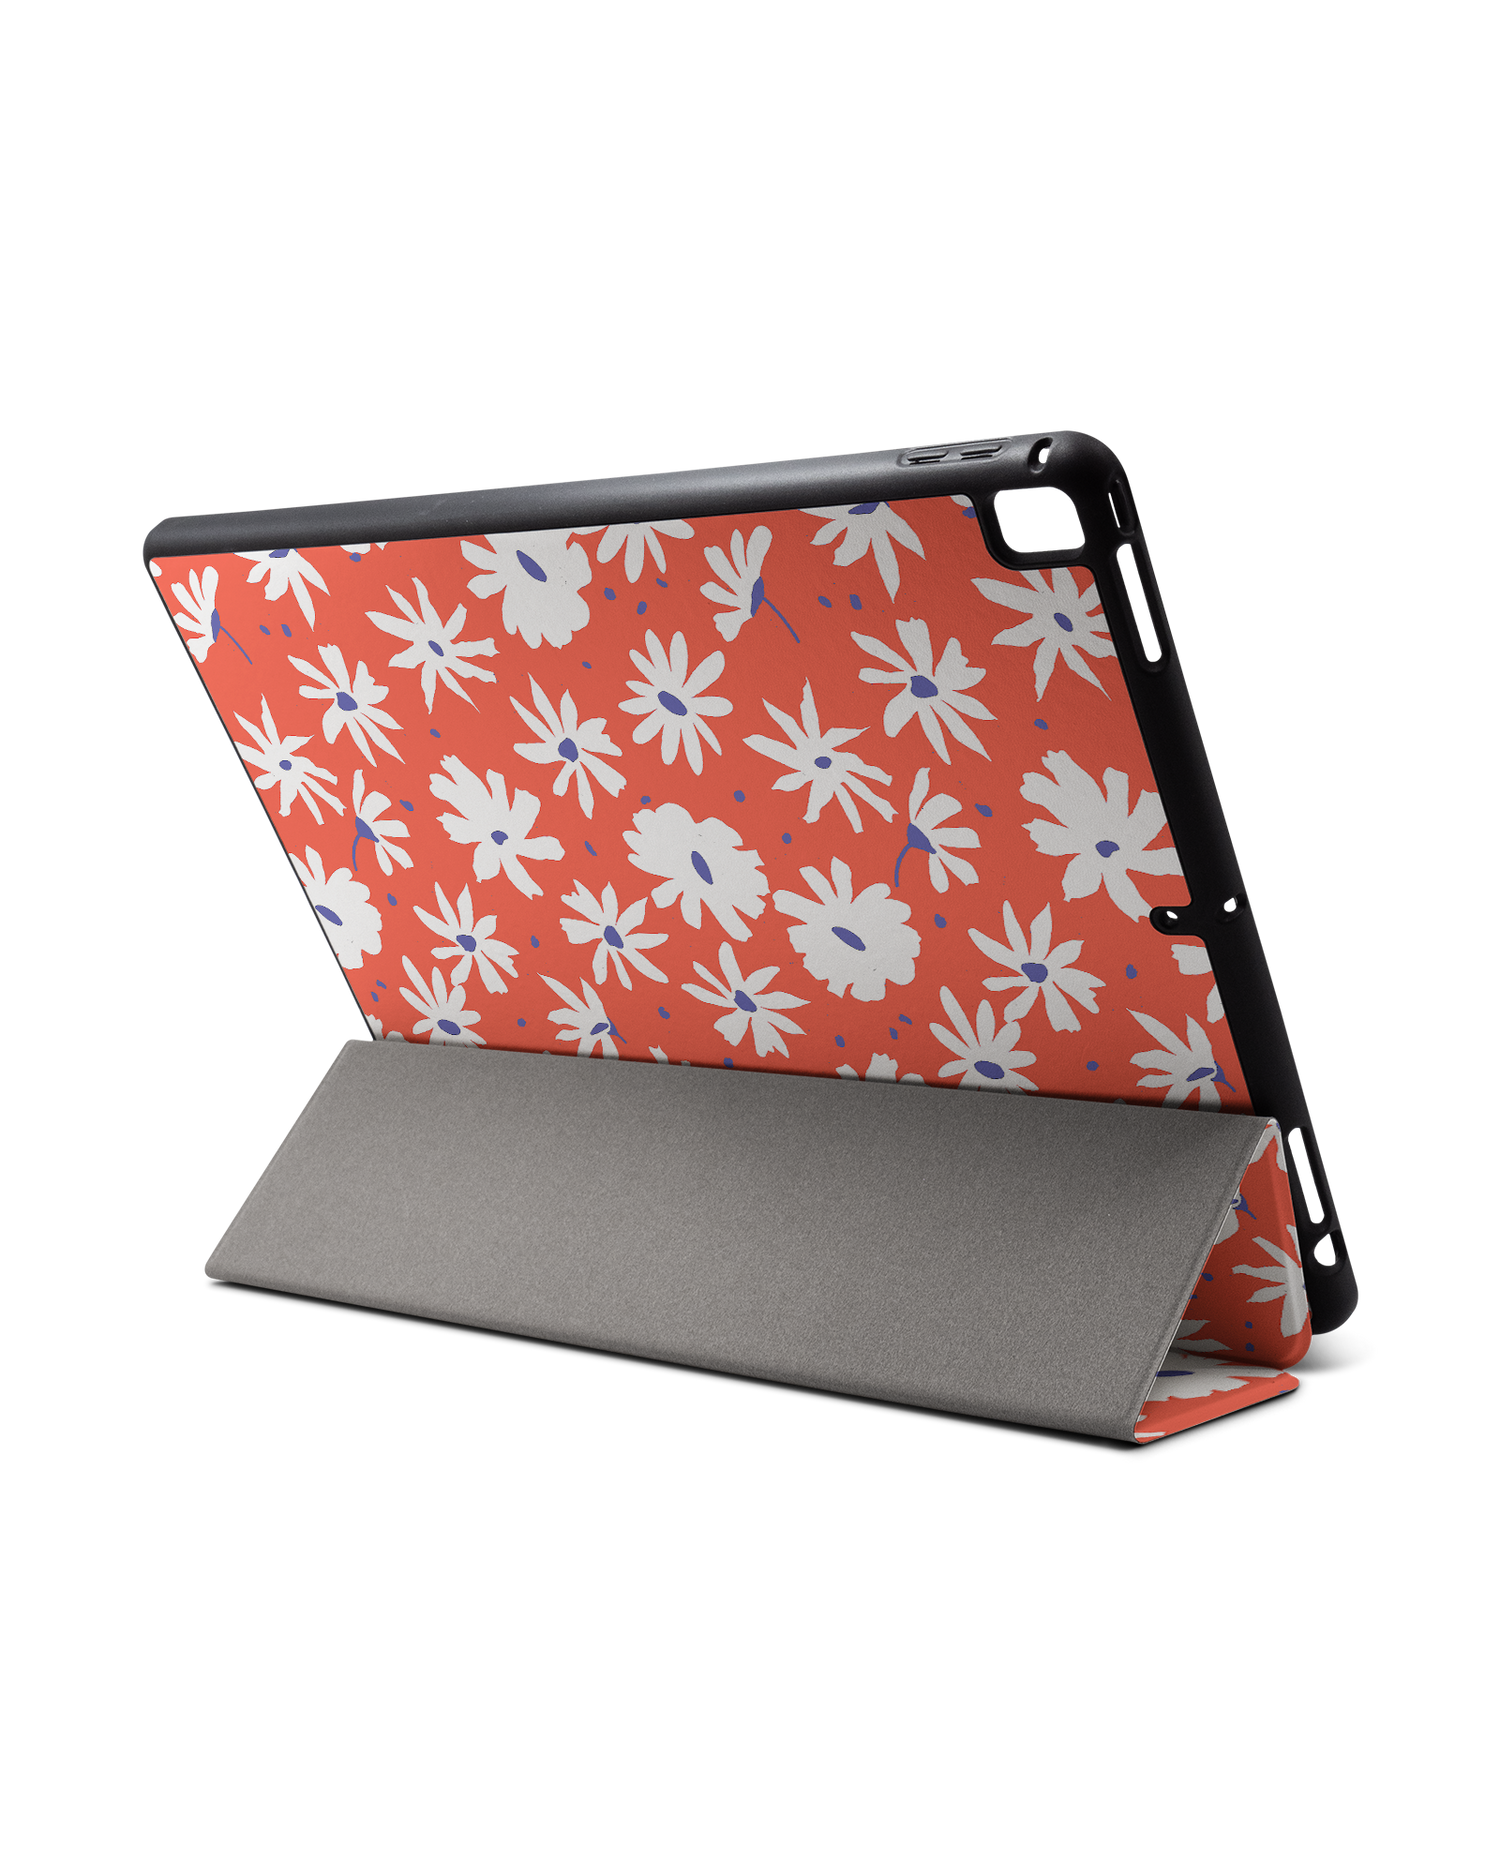 Retro Daisy iPad Hülle mit Stifthalter für Apple iPad Pro 2 12.9'' (2017): Aufgestellt im Querformat von hinten